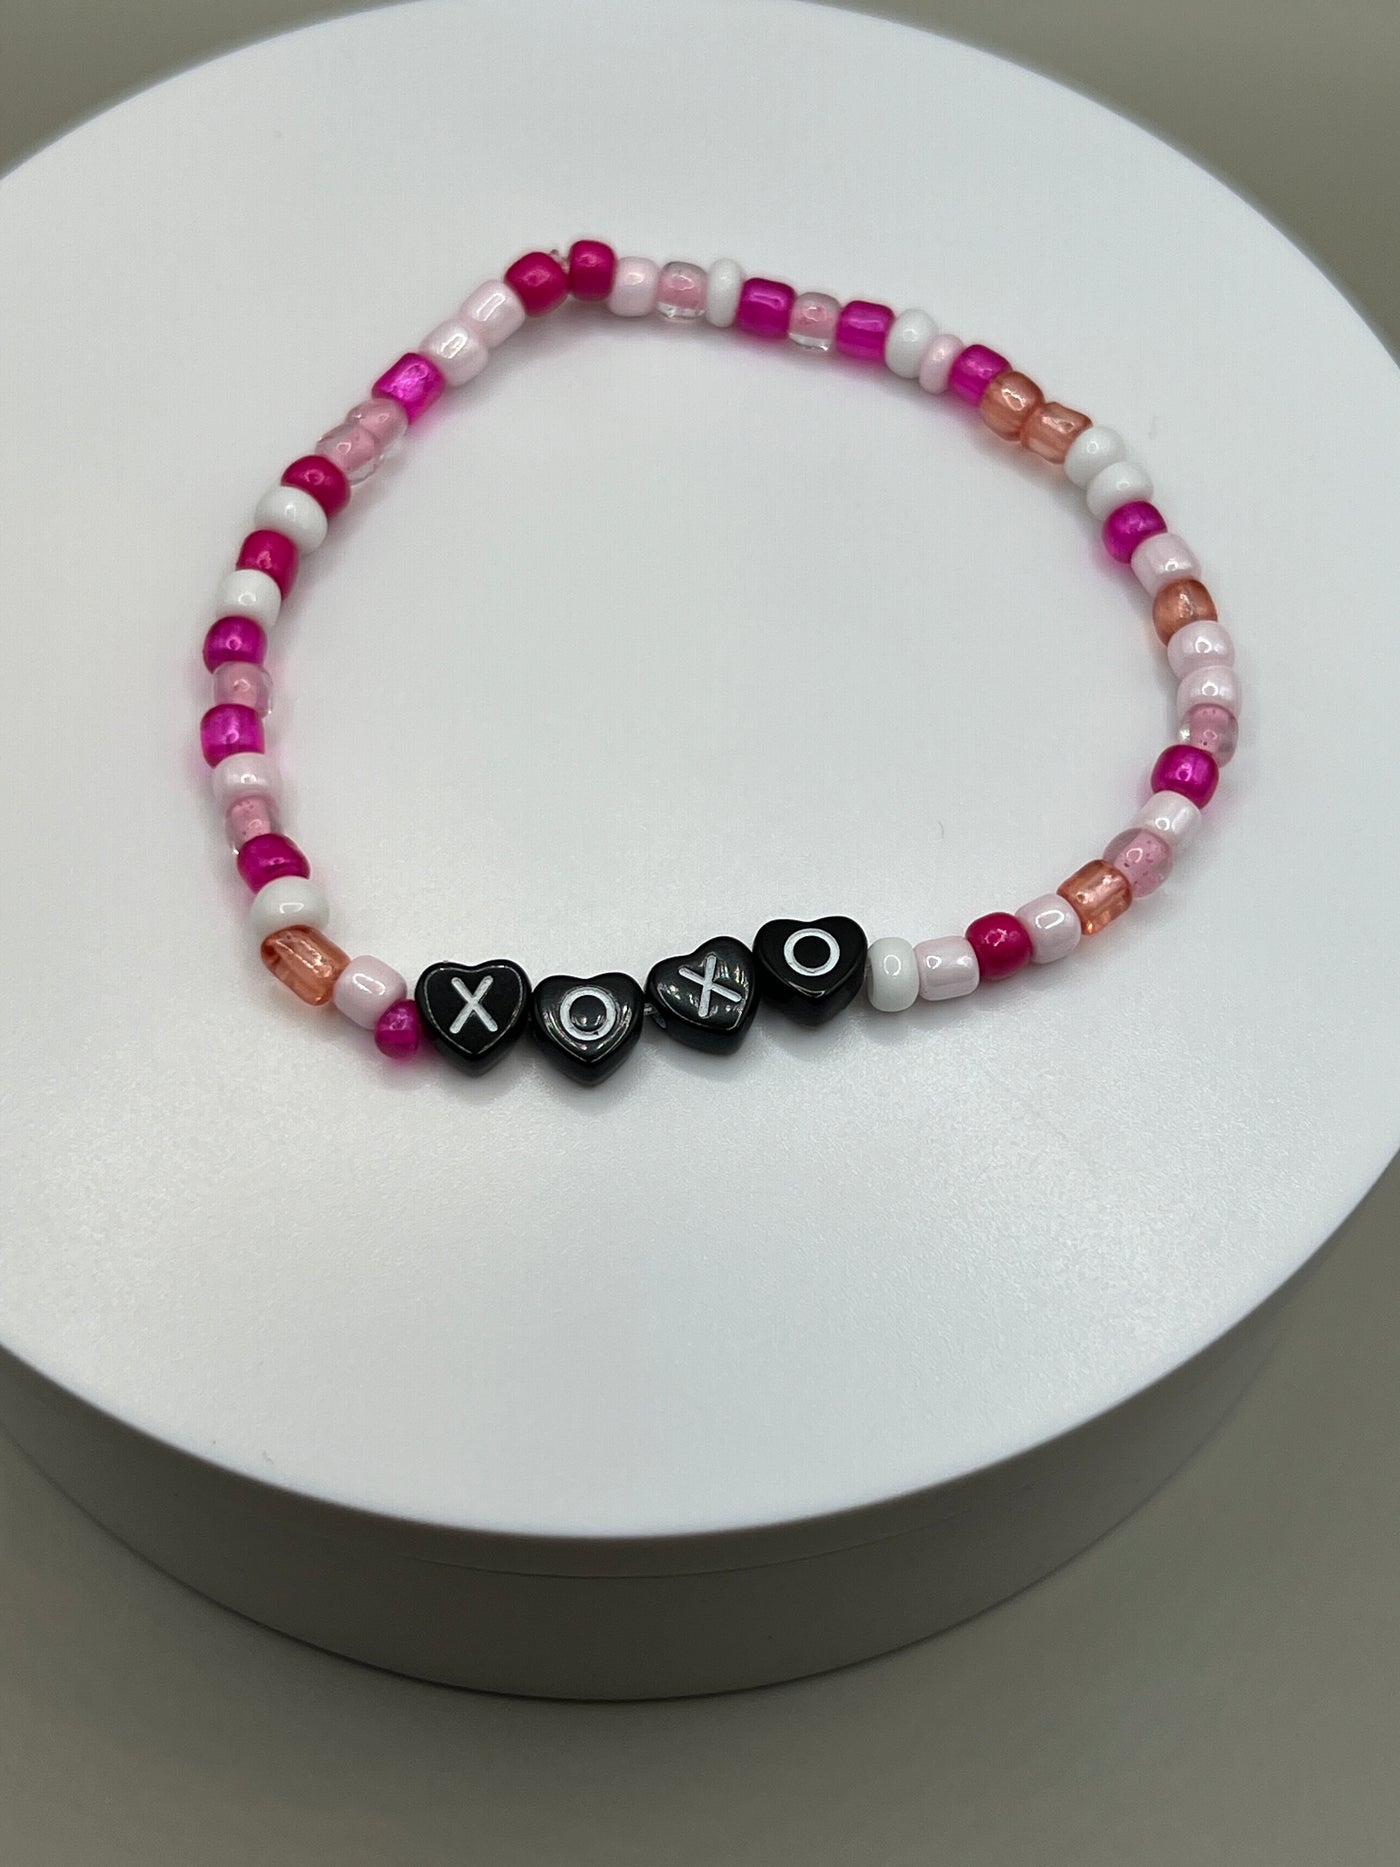 XOXO Valentine Bracelet - Pink/White/Glitter Stretch